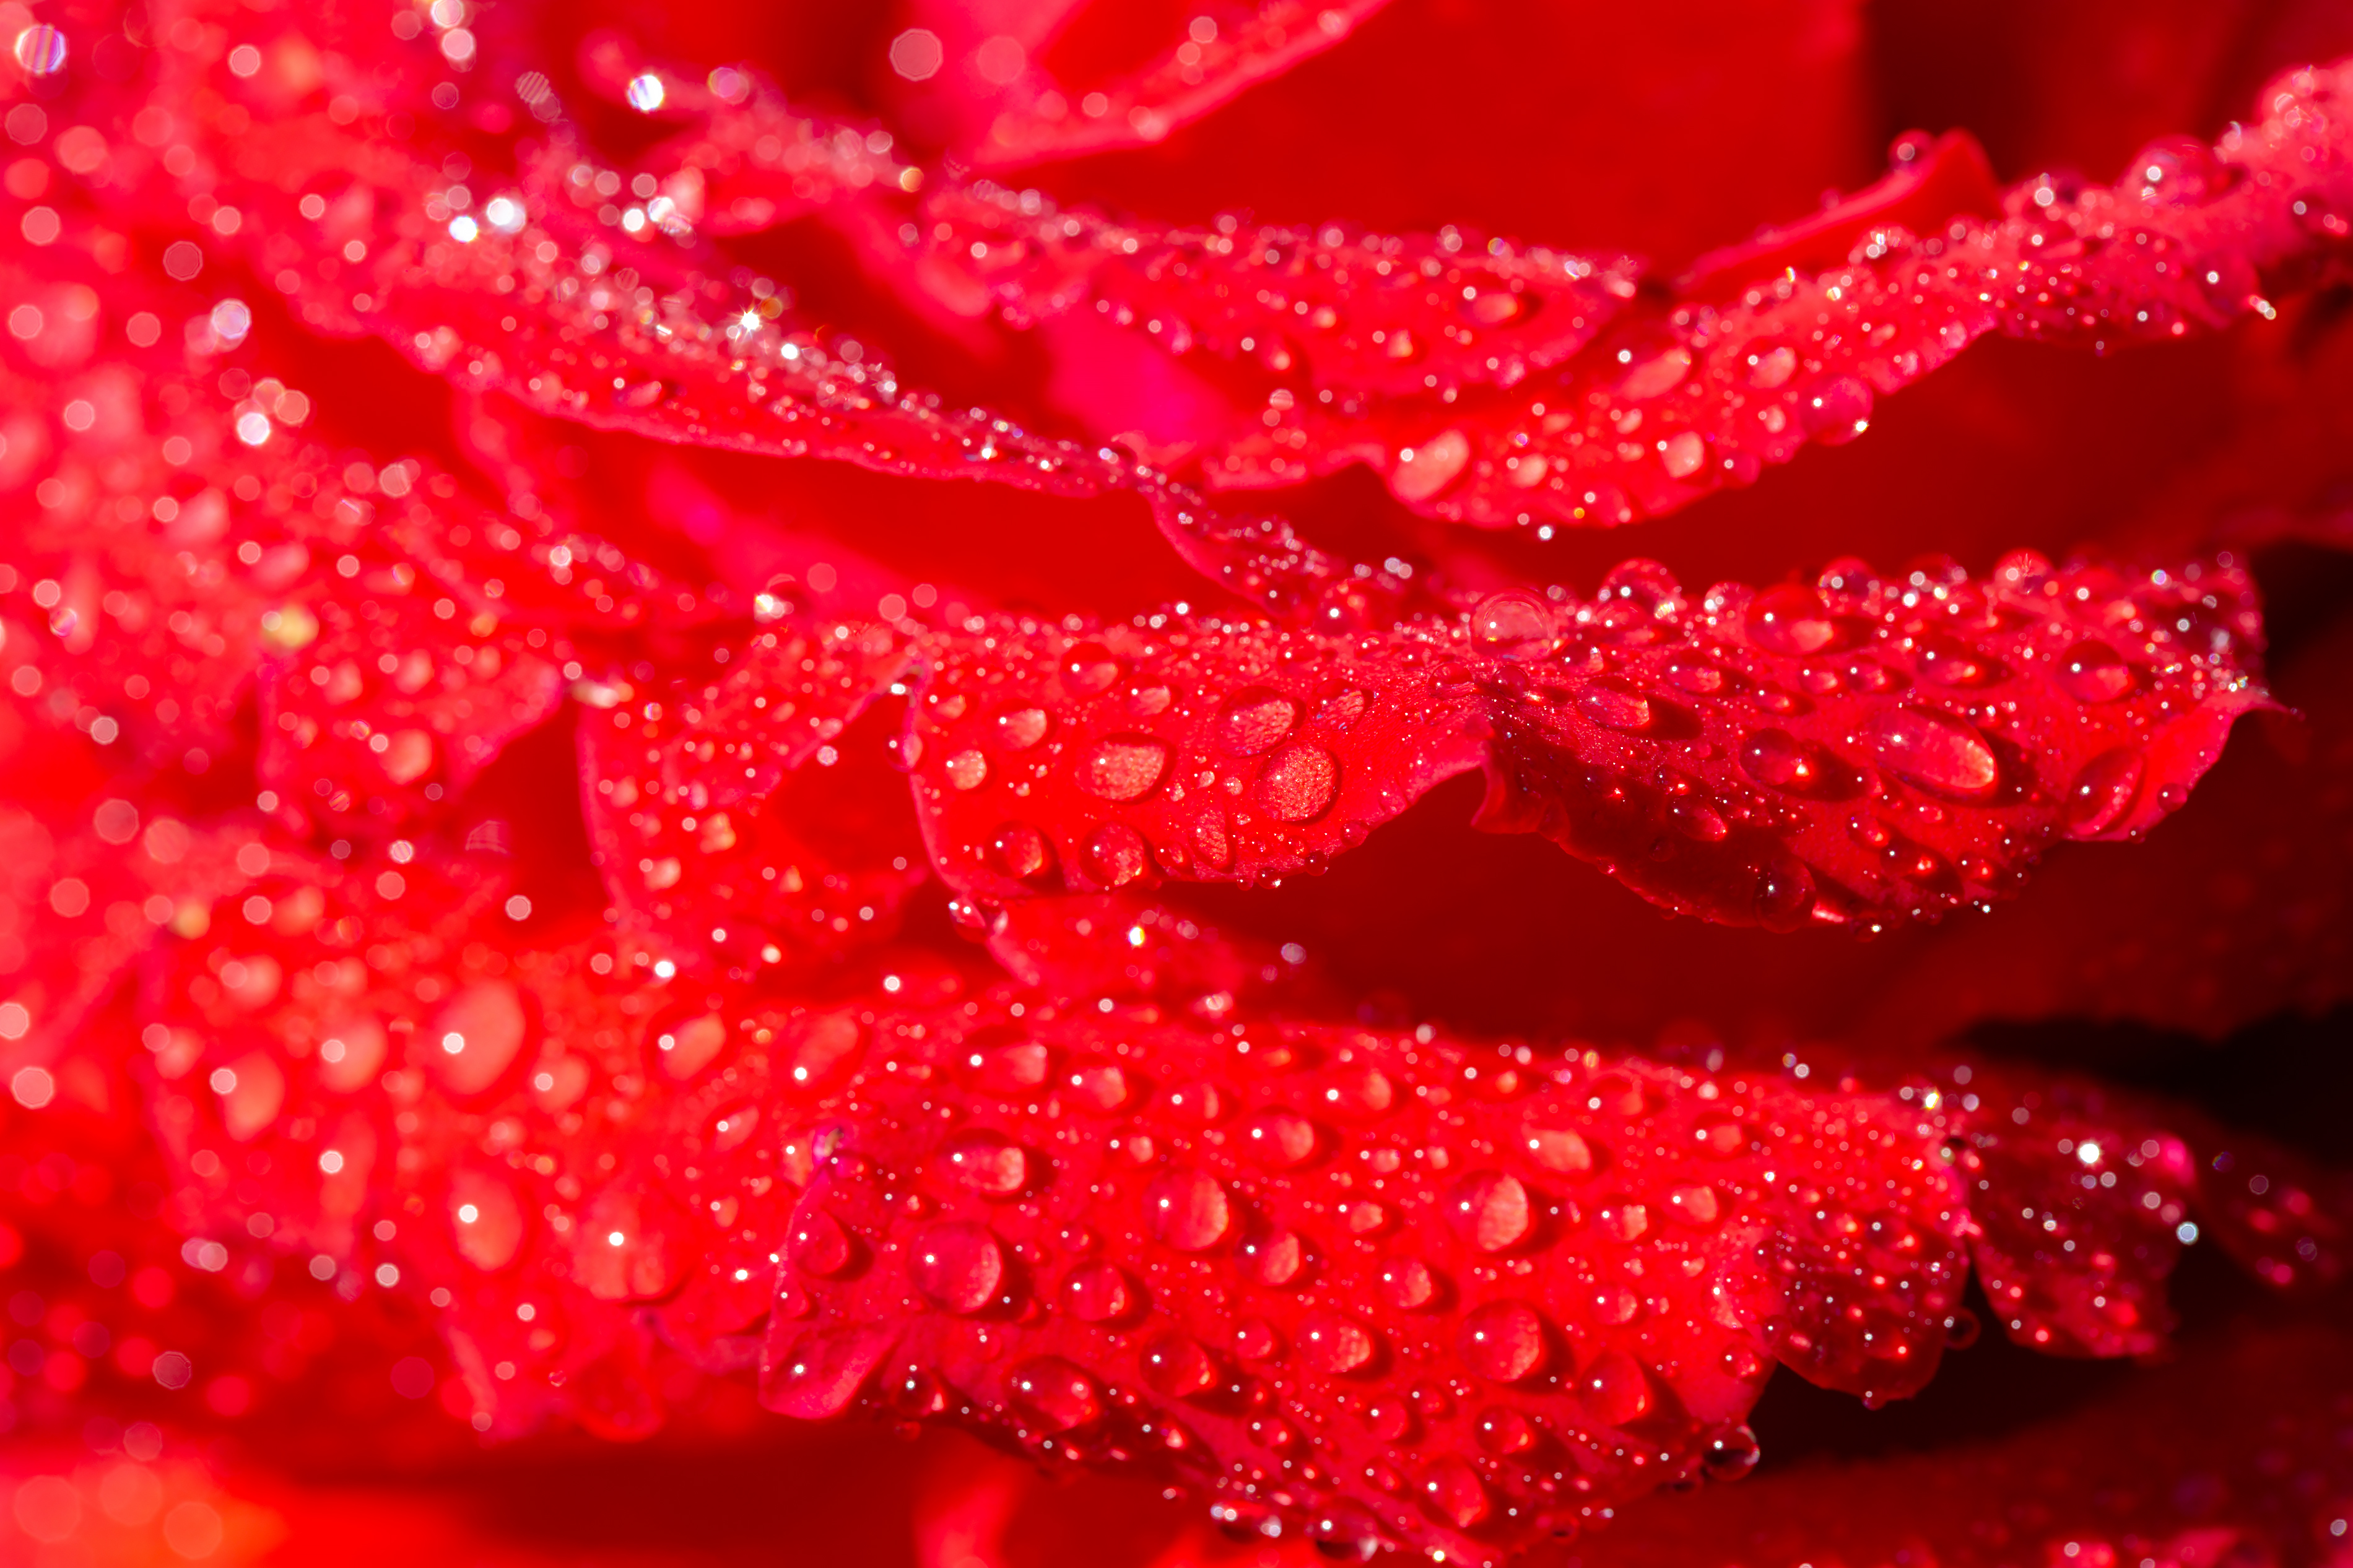 免费照片Macro of scarlet rose petals